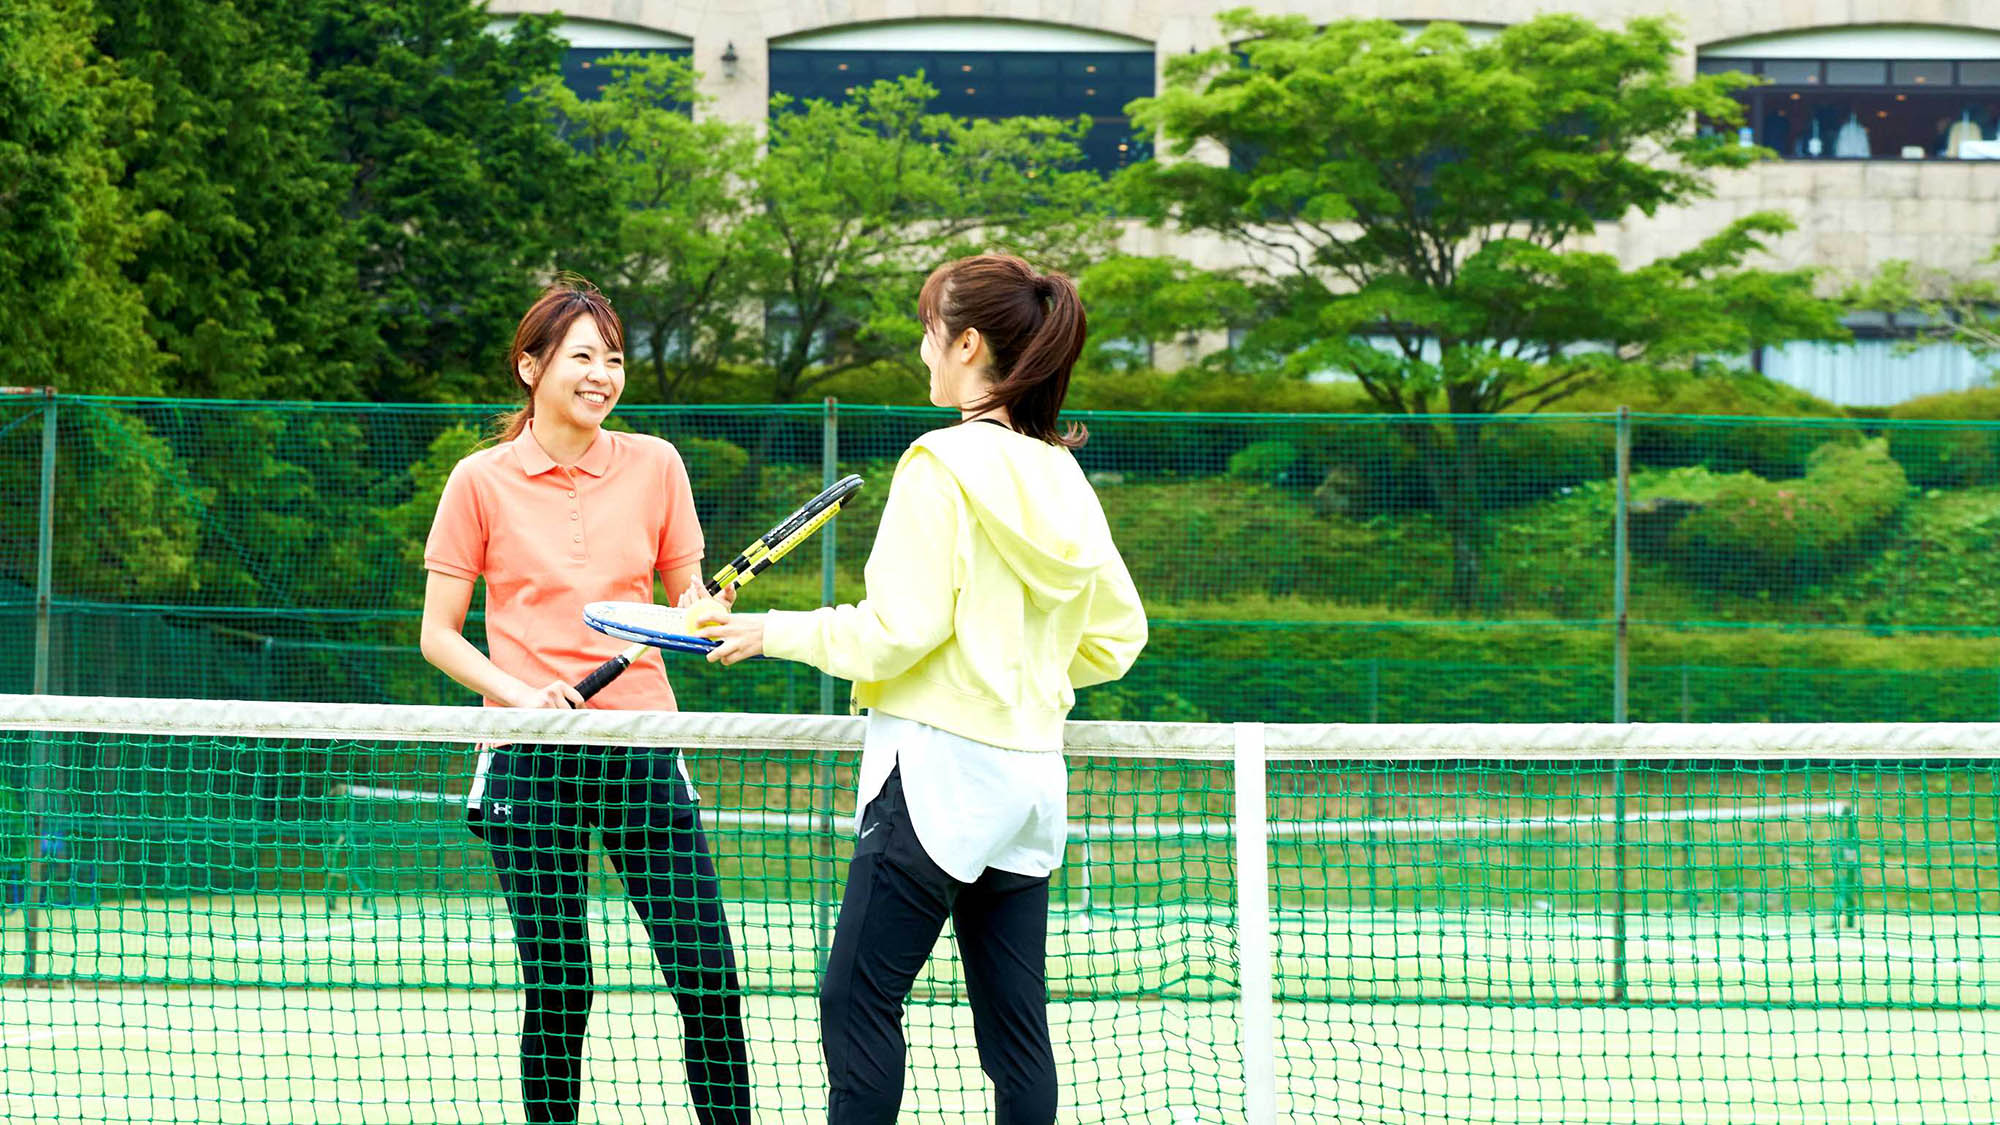 館内施設【テニスコート】豊かな自然の中、爽やかなテニスをお楽しみください。